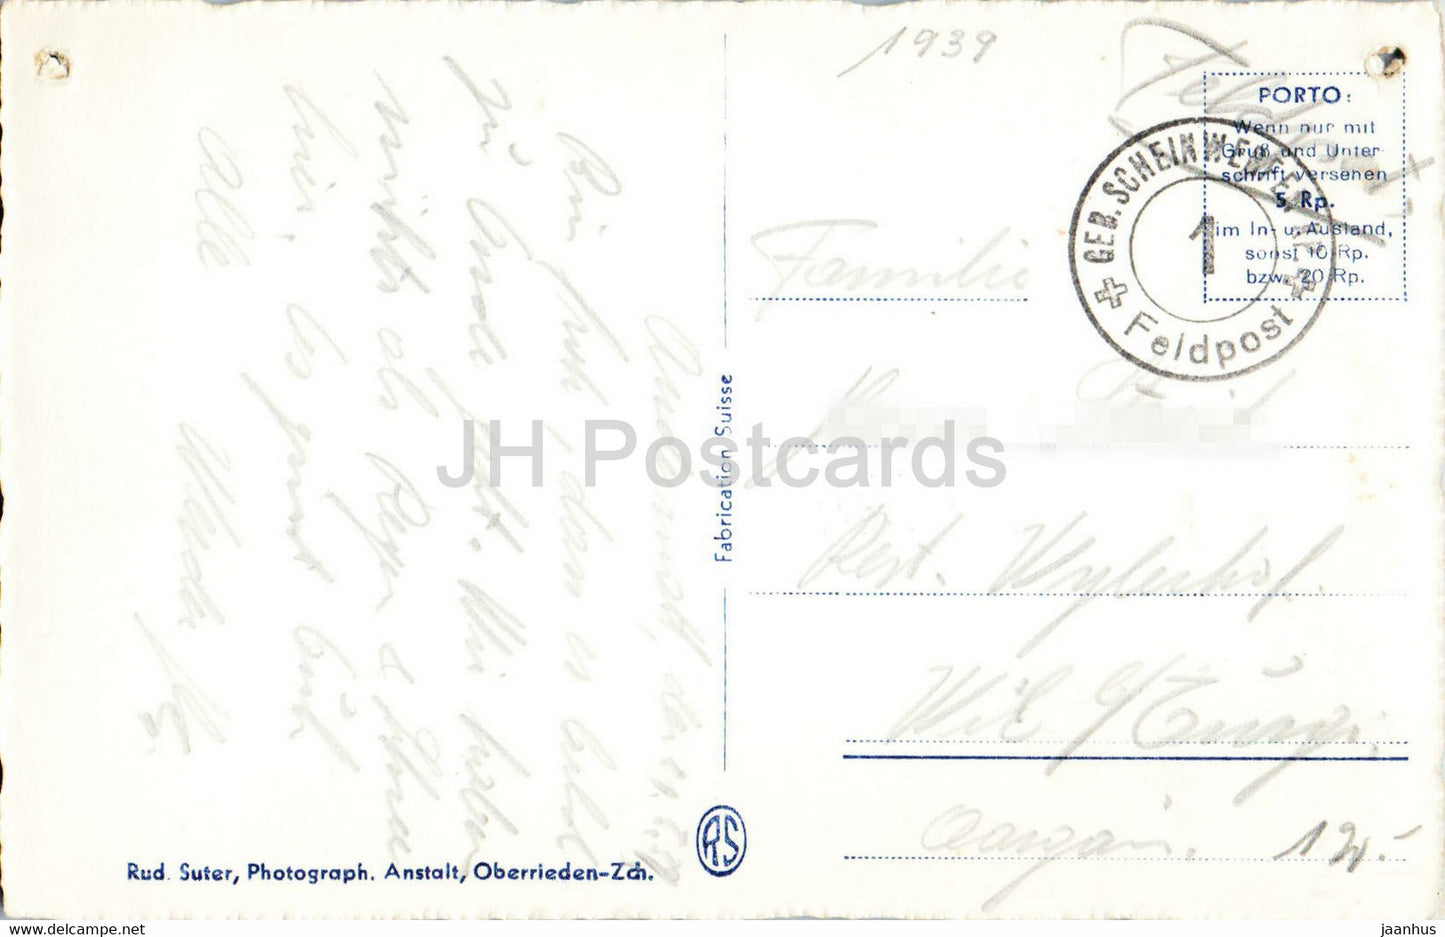 Andermatt - 908 - Feldpost - military mail - old postcard - 1939 - Switzerland - unused